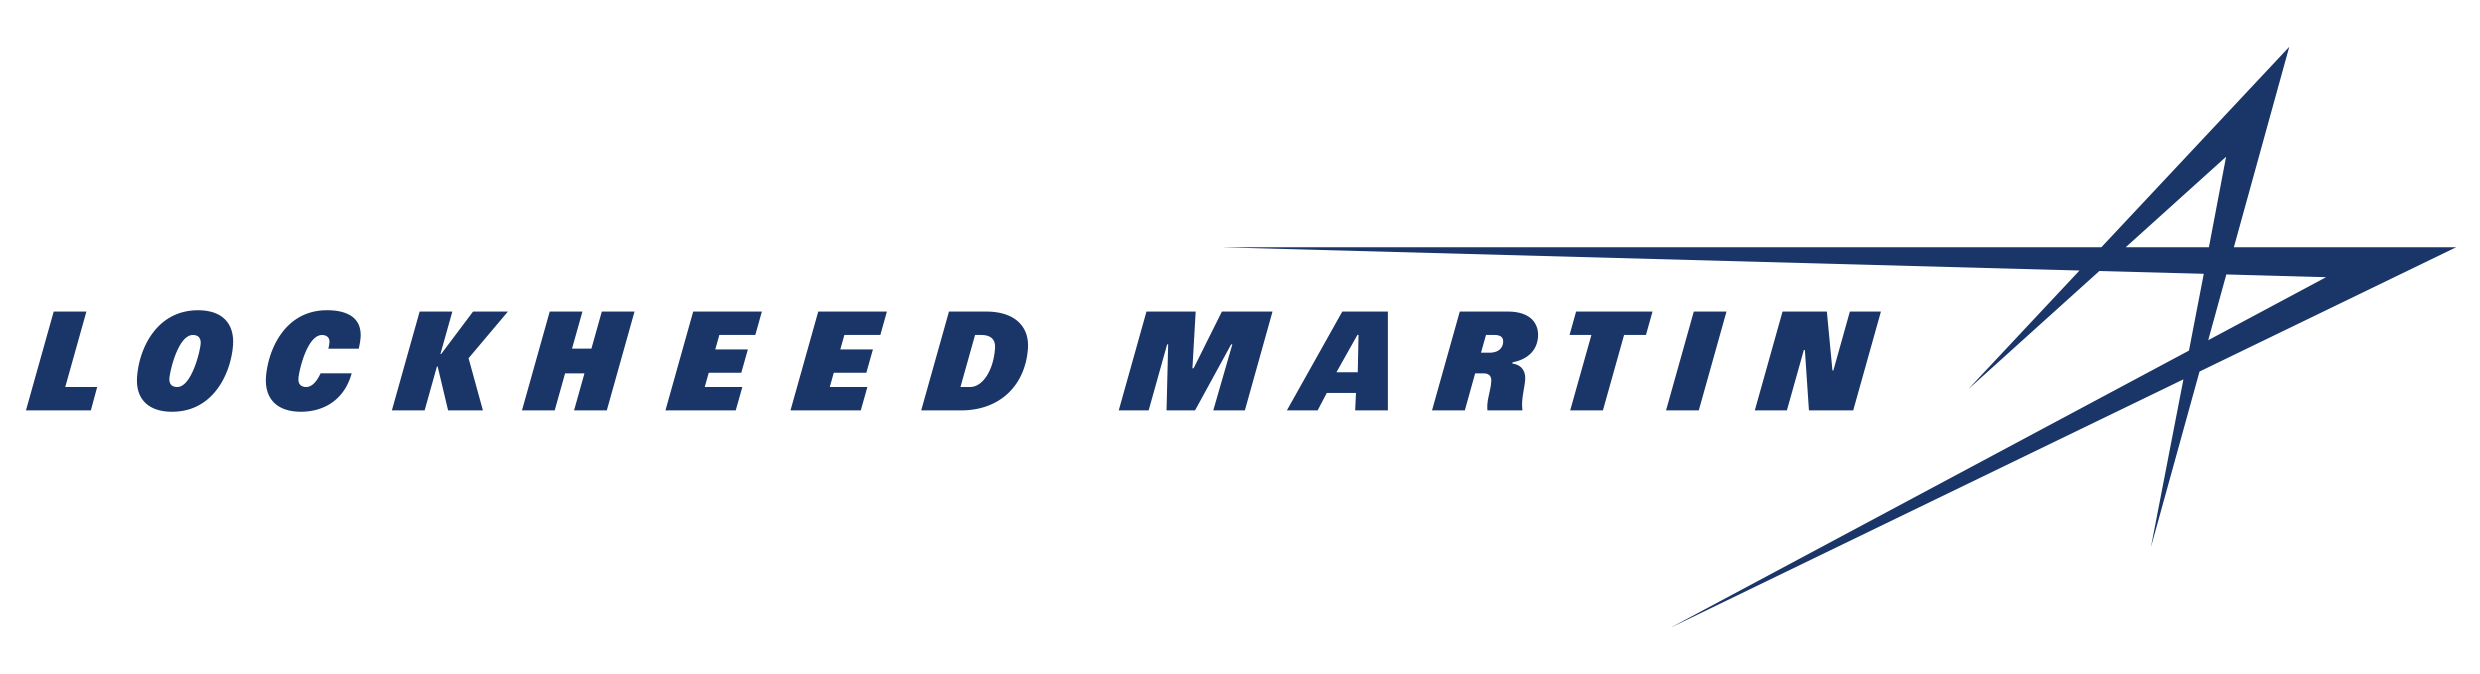 Lockheed Martin Star Logo - Lockheed Martin Corporation